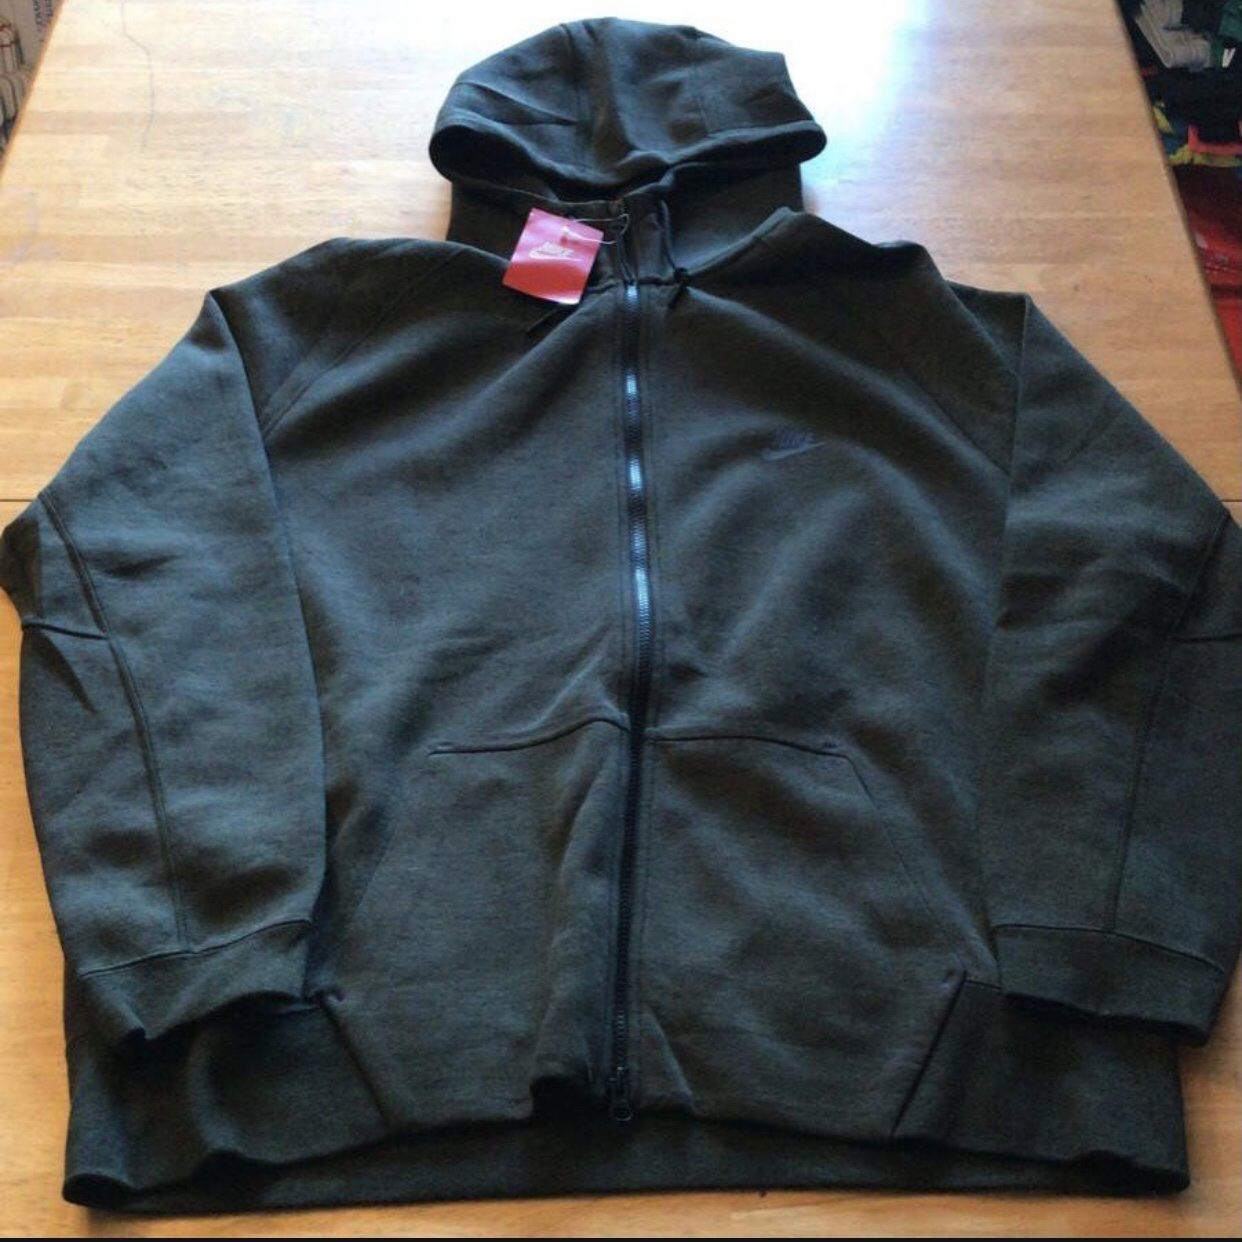 Interpunctie Lengtegraad Oost Timor Brand new Nike tech fleece hoodie full zip jacket dark gray men's XXL 2X  for Sale in El Cajon, CA - OfferUp